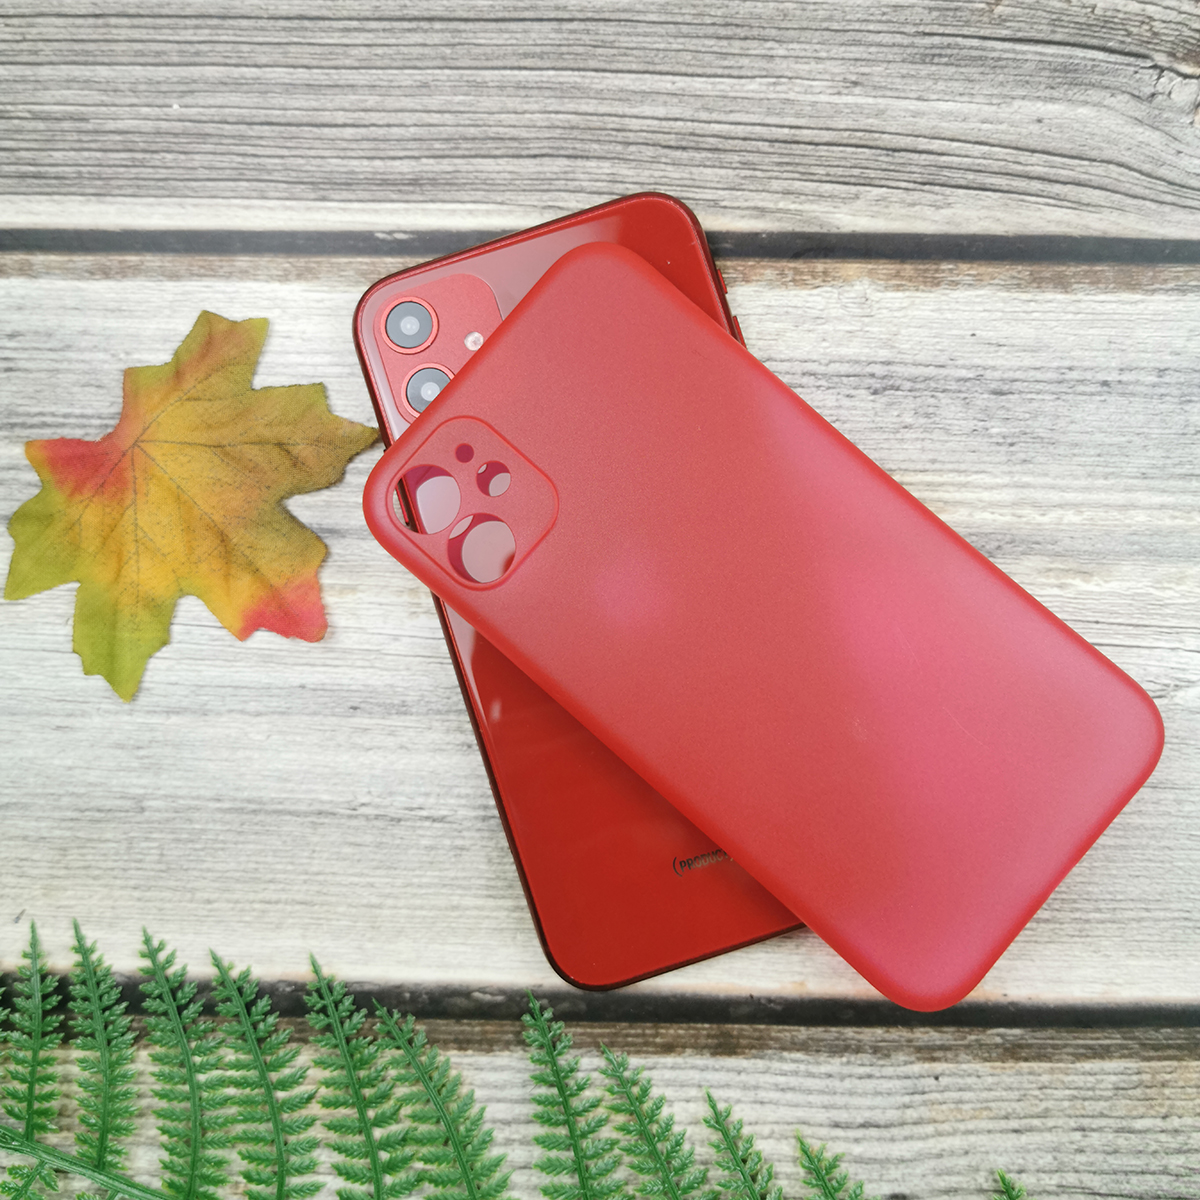 313101 รุ่น iPhone XR สีแดง กึ่งโปร่ง
